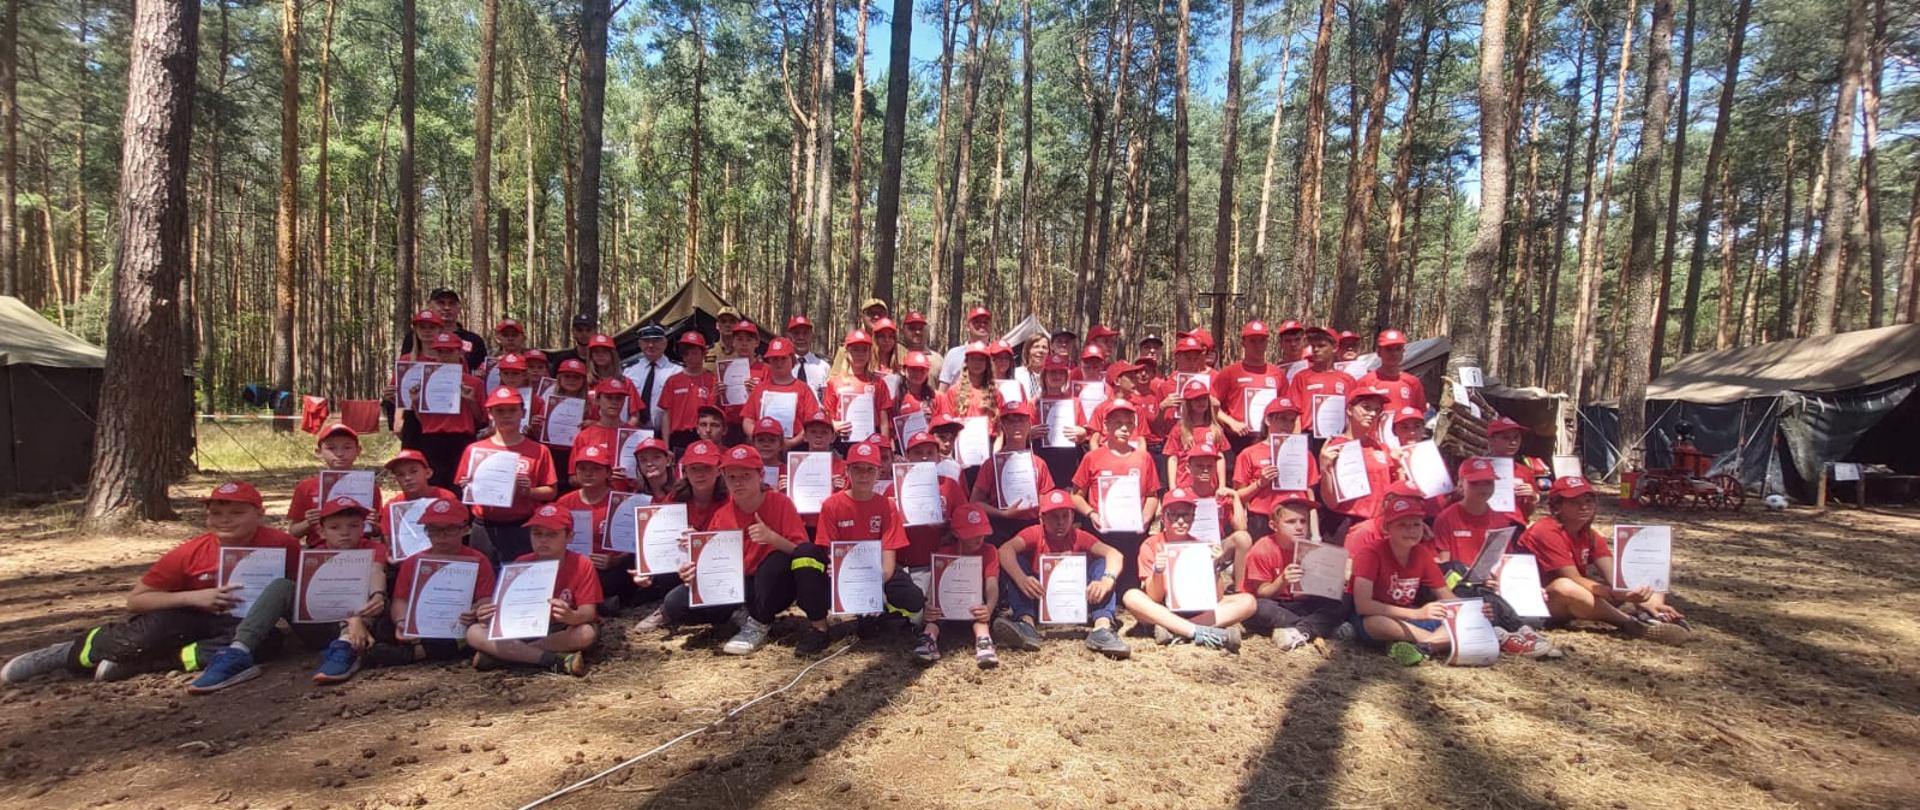 Obóz MDP Lgiń. Grupa ludzi, uczestników obozu wspólnie pozuje do pamiątkowego zdjęcia, w tle drzewa.